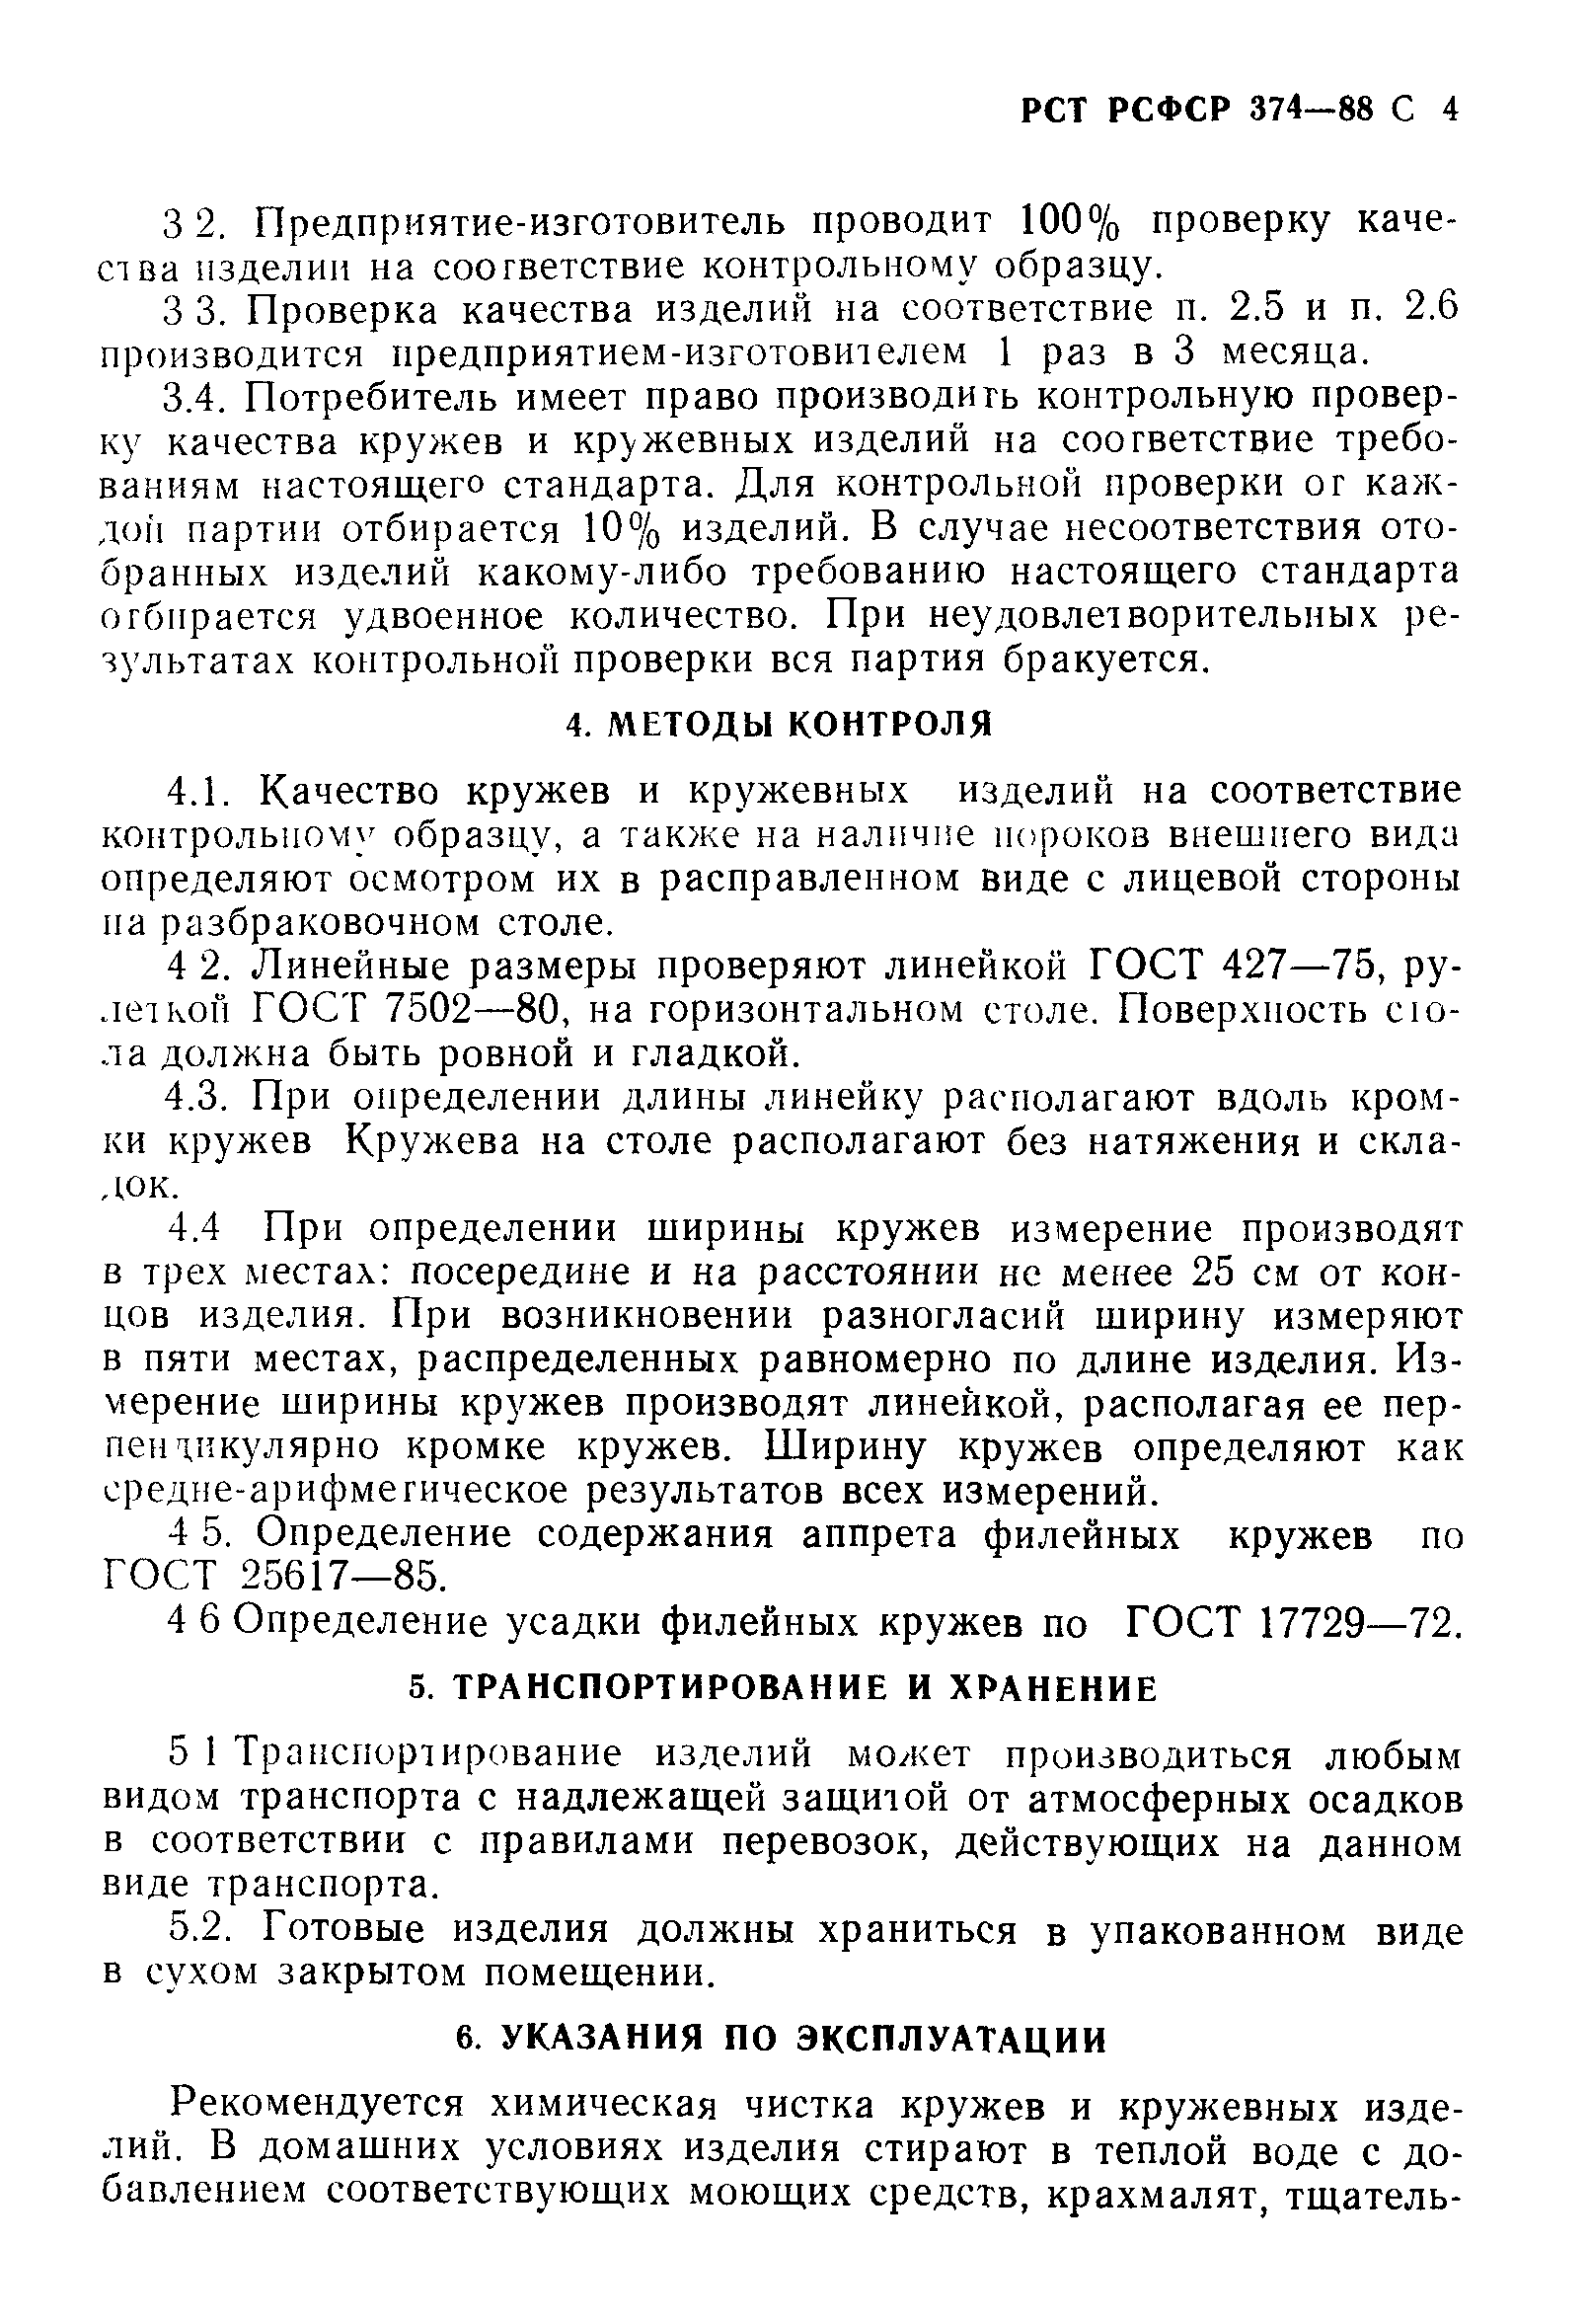 РСТ РСФСР 374-88